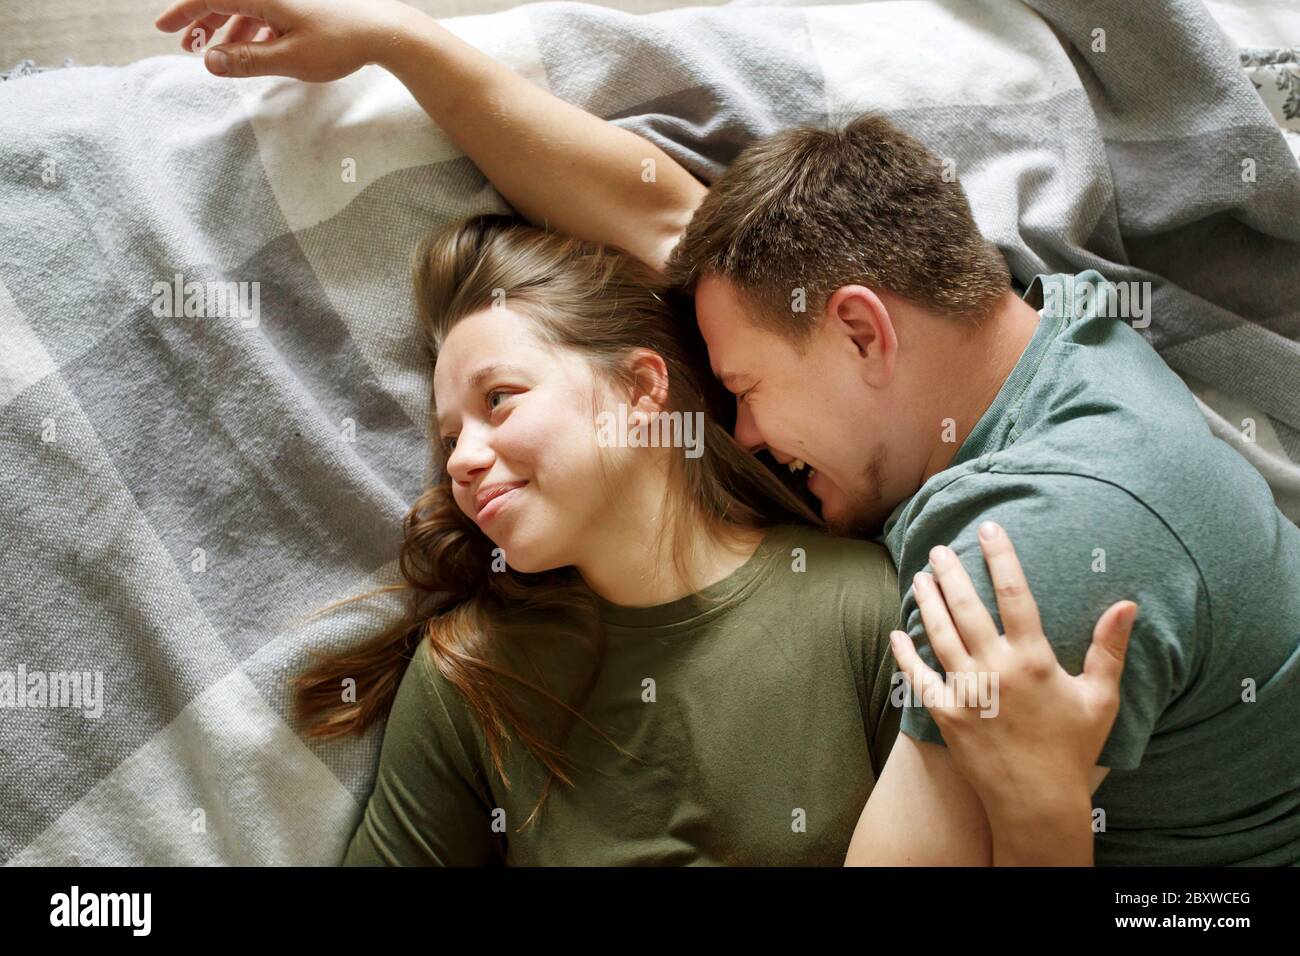 Portrait von lächelnd liebenden Paar auf einem Bett zusammen liegend, bleiben zu Hause Konzept, Draufsicht. Junge Freund und Freundin umarmen, echte Menschen. Stockfoto